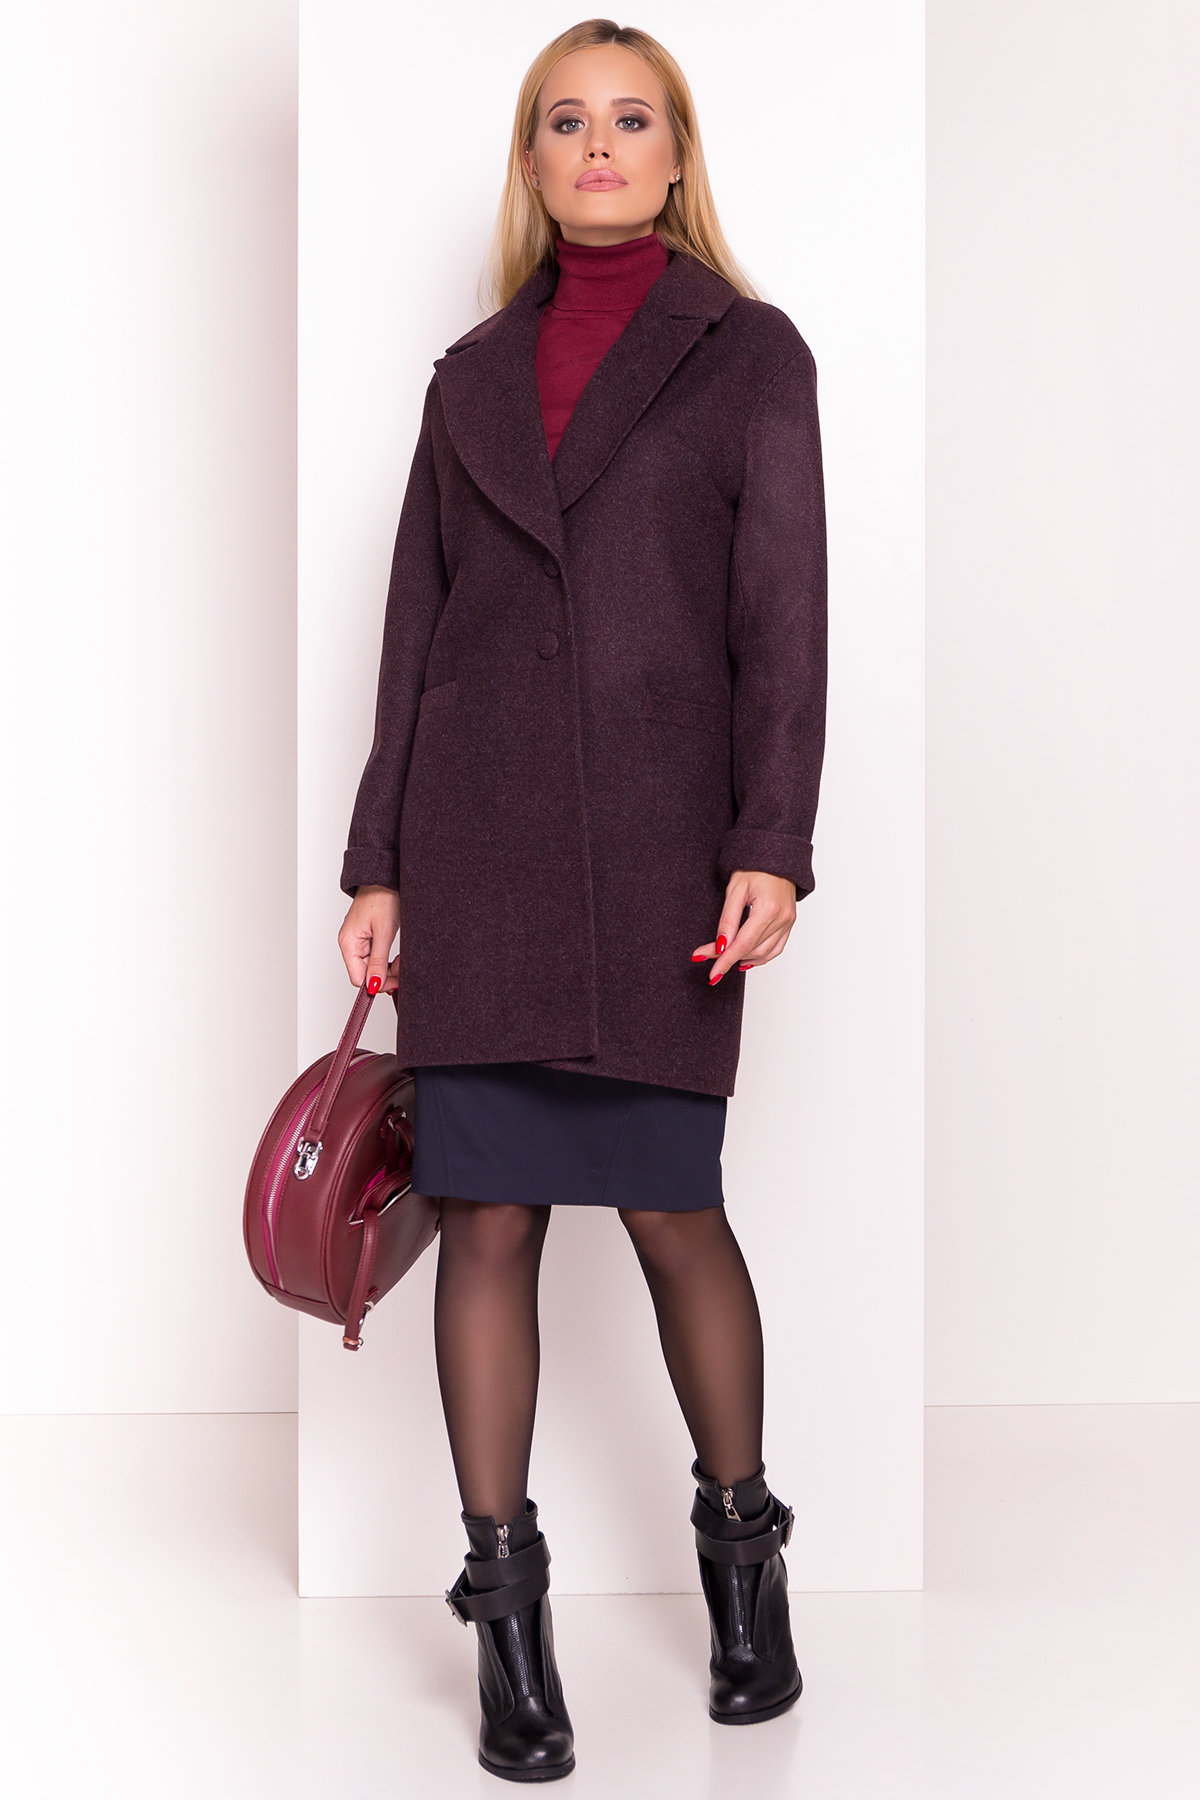 Женское пальто от производителя от Modus Демисезонное пальто Вива 4558